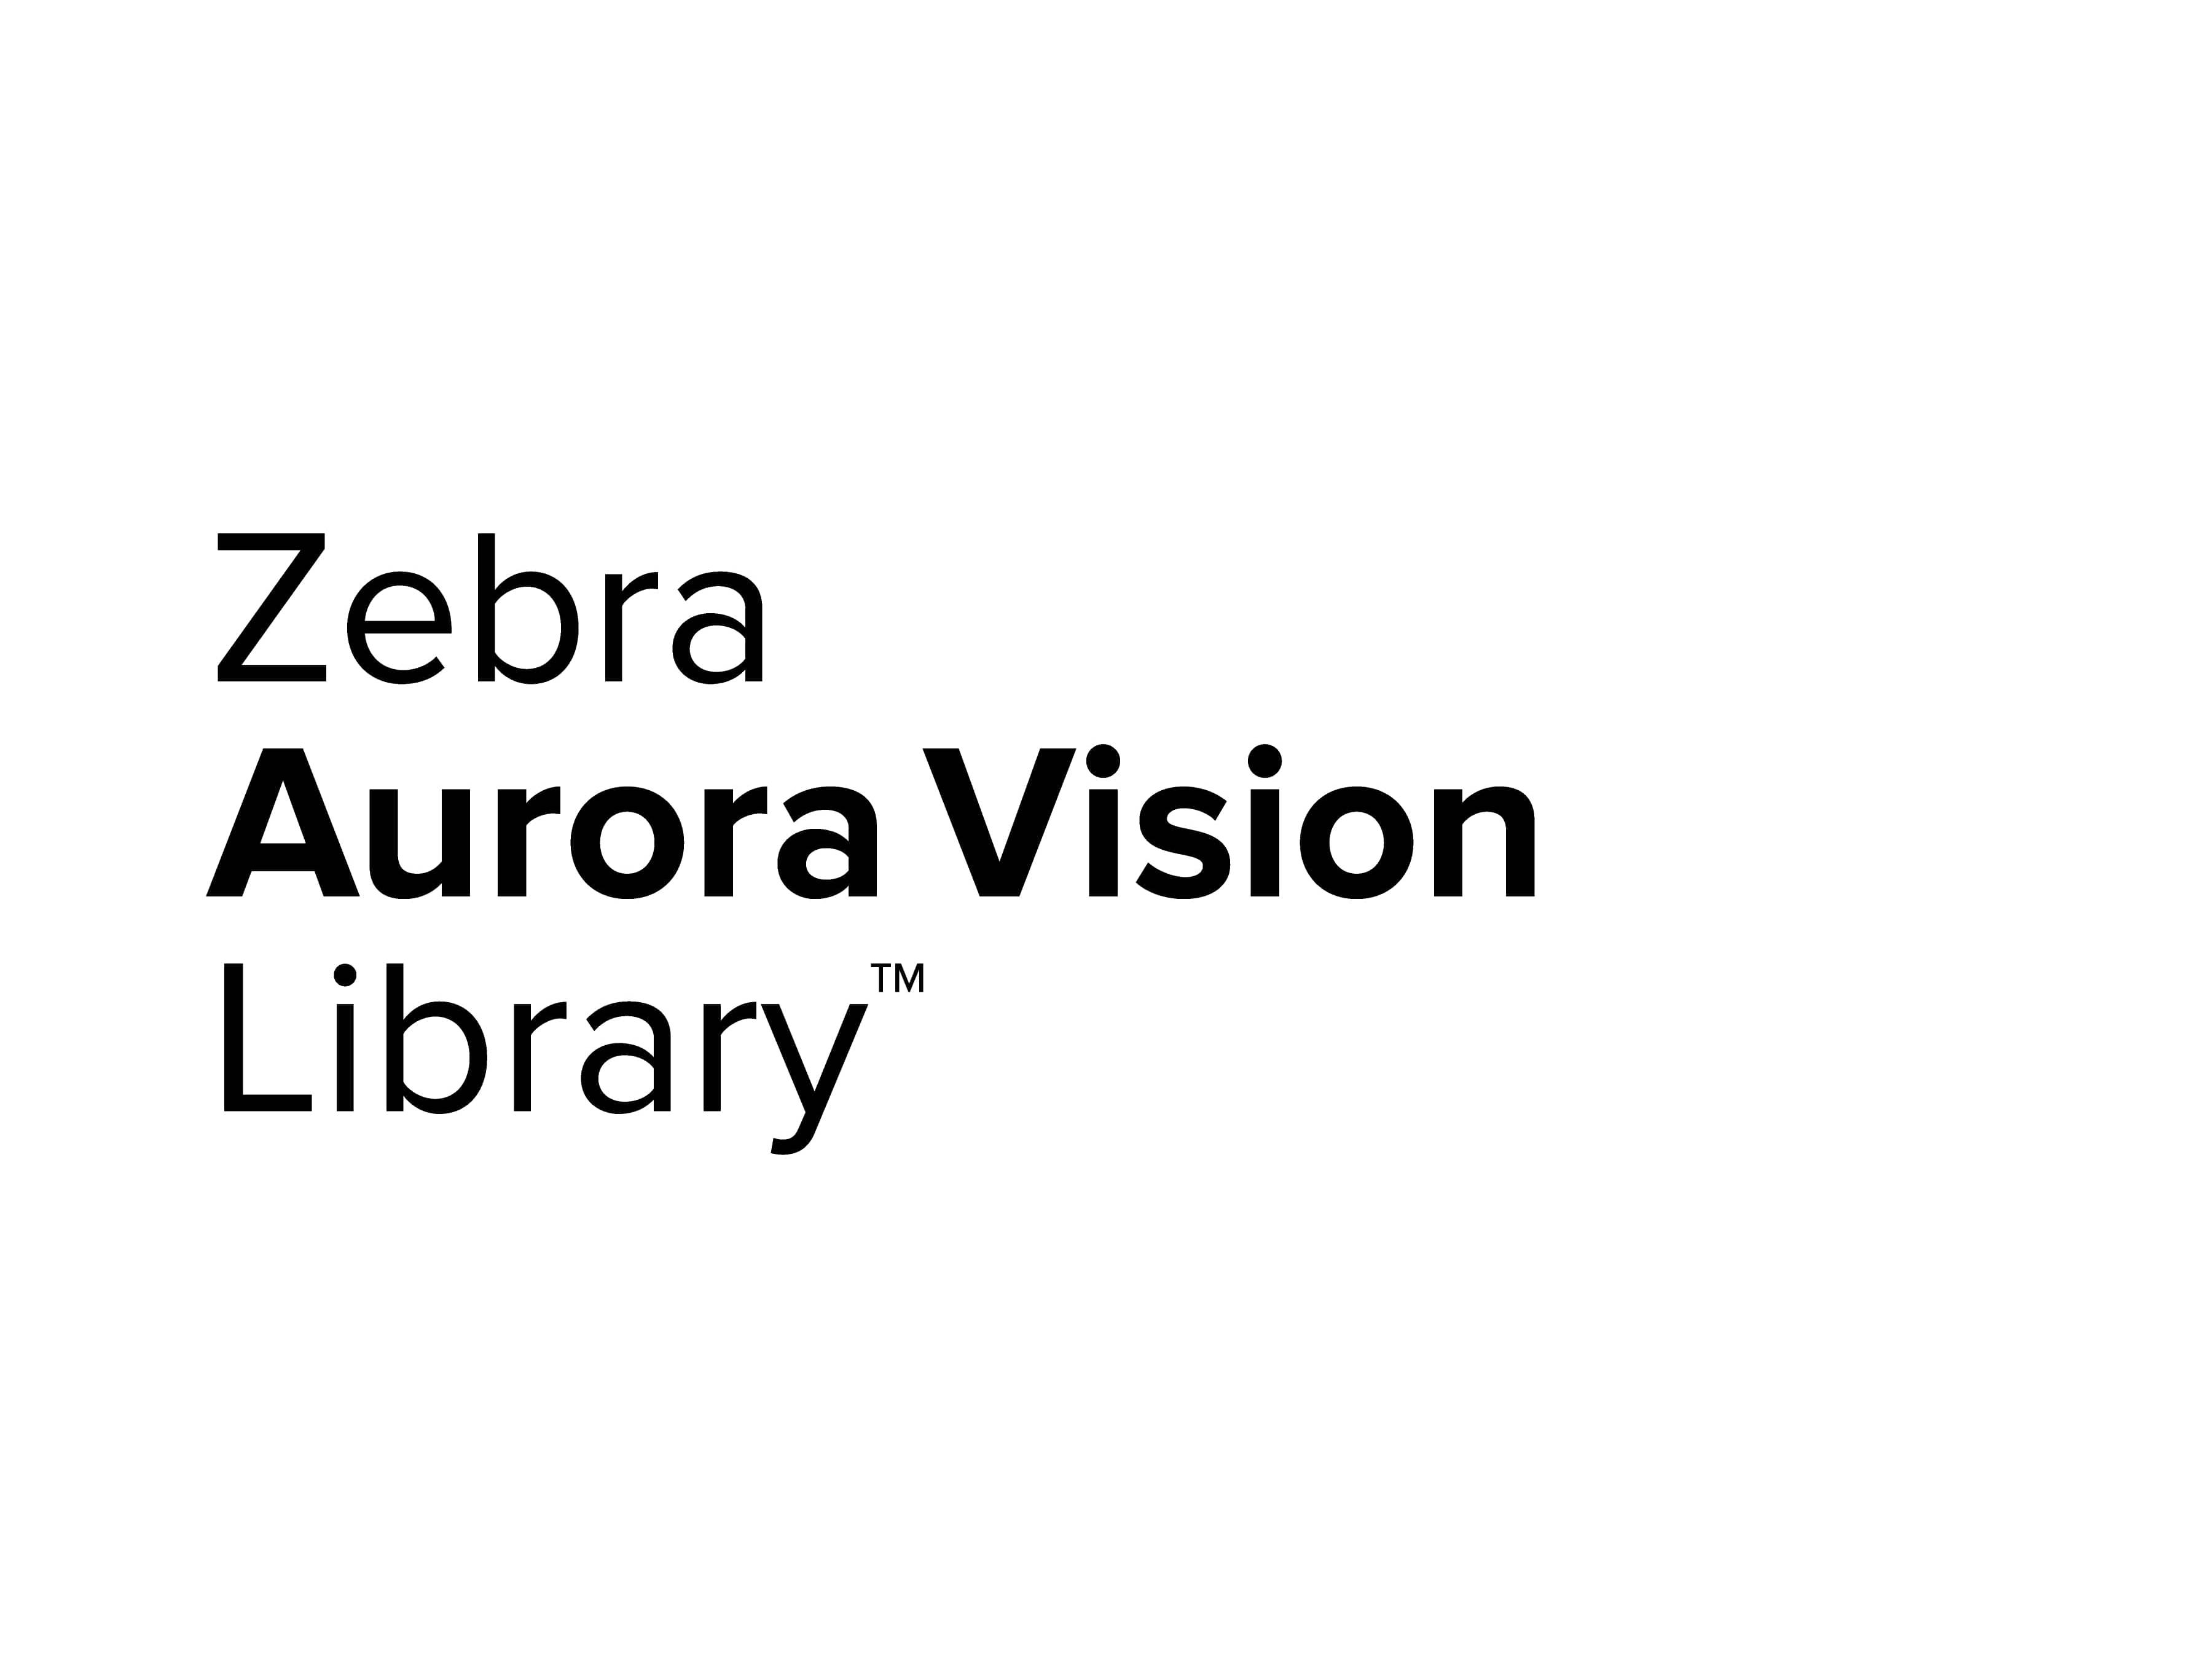 Zebra Aurora Vision Library